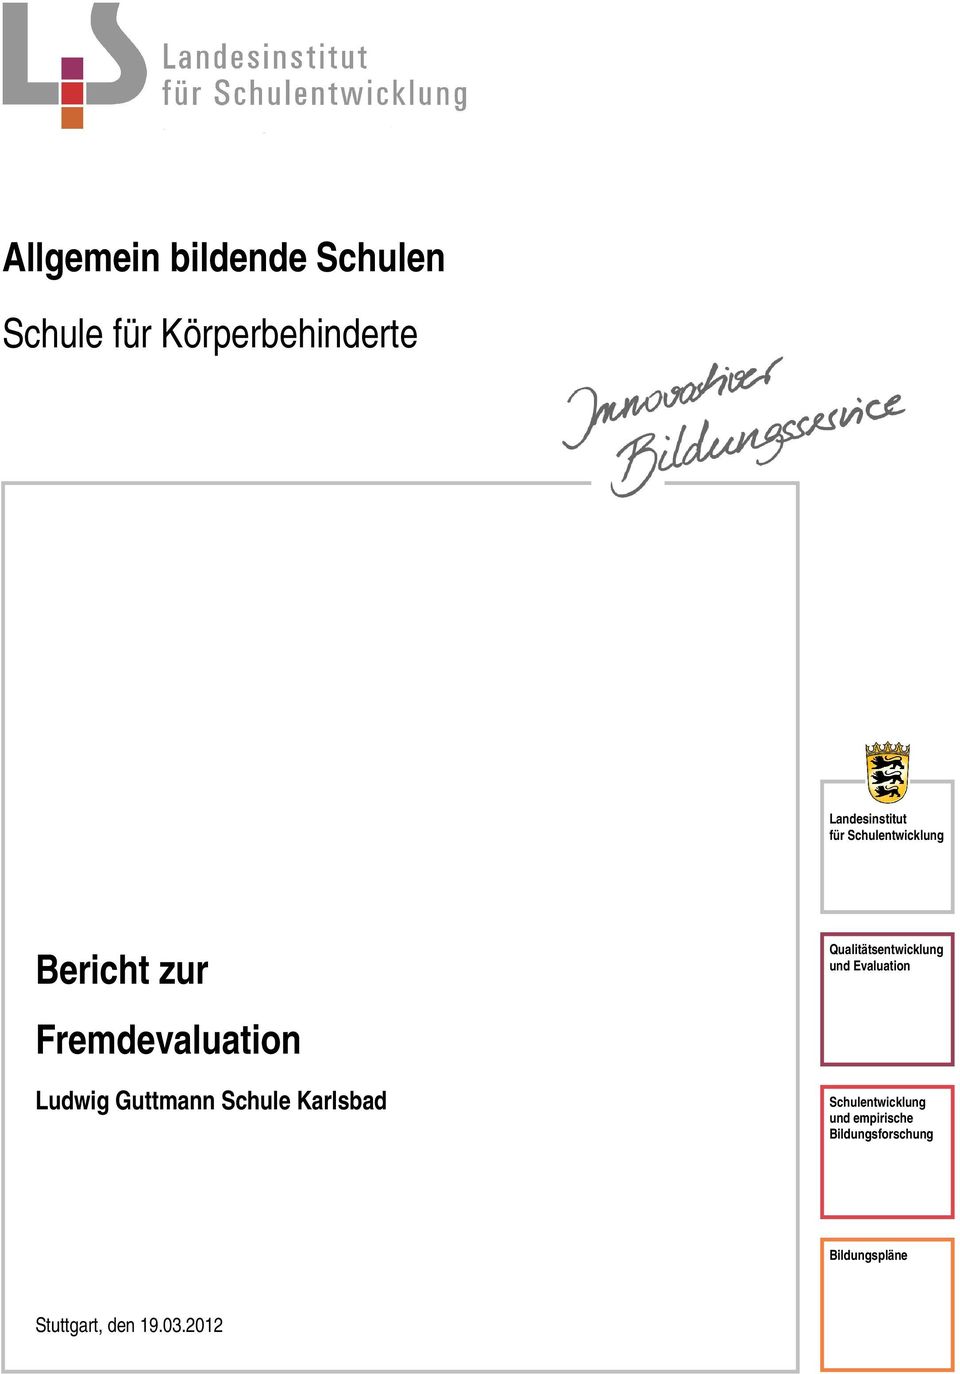 Ludwig Guttmann Schule Karlsbad Qualitätsentwicklung und Evaluation